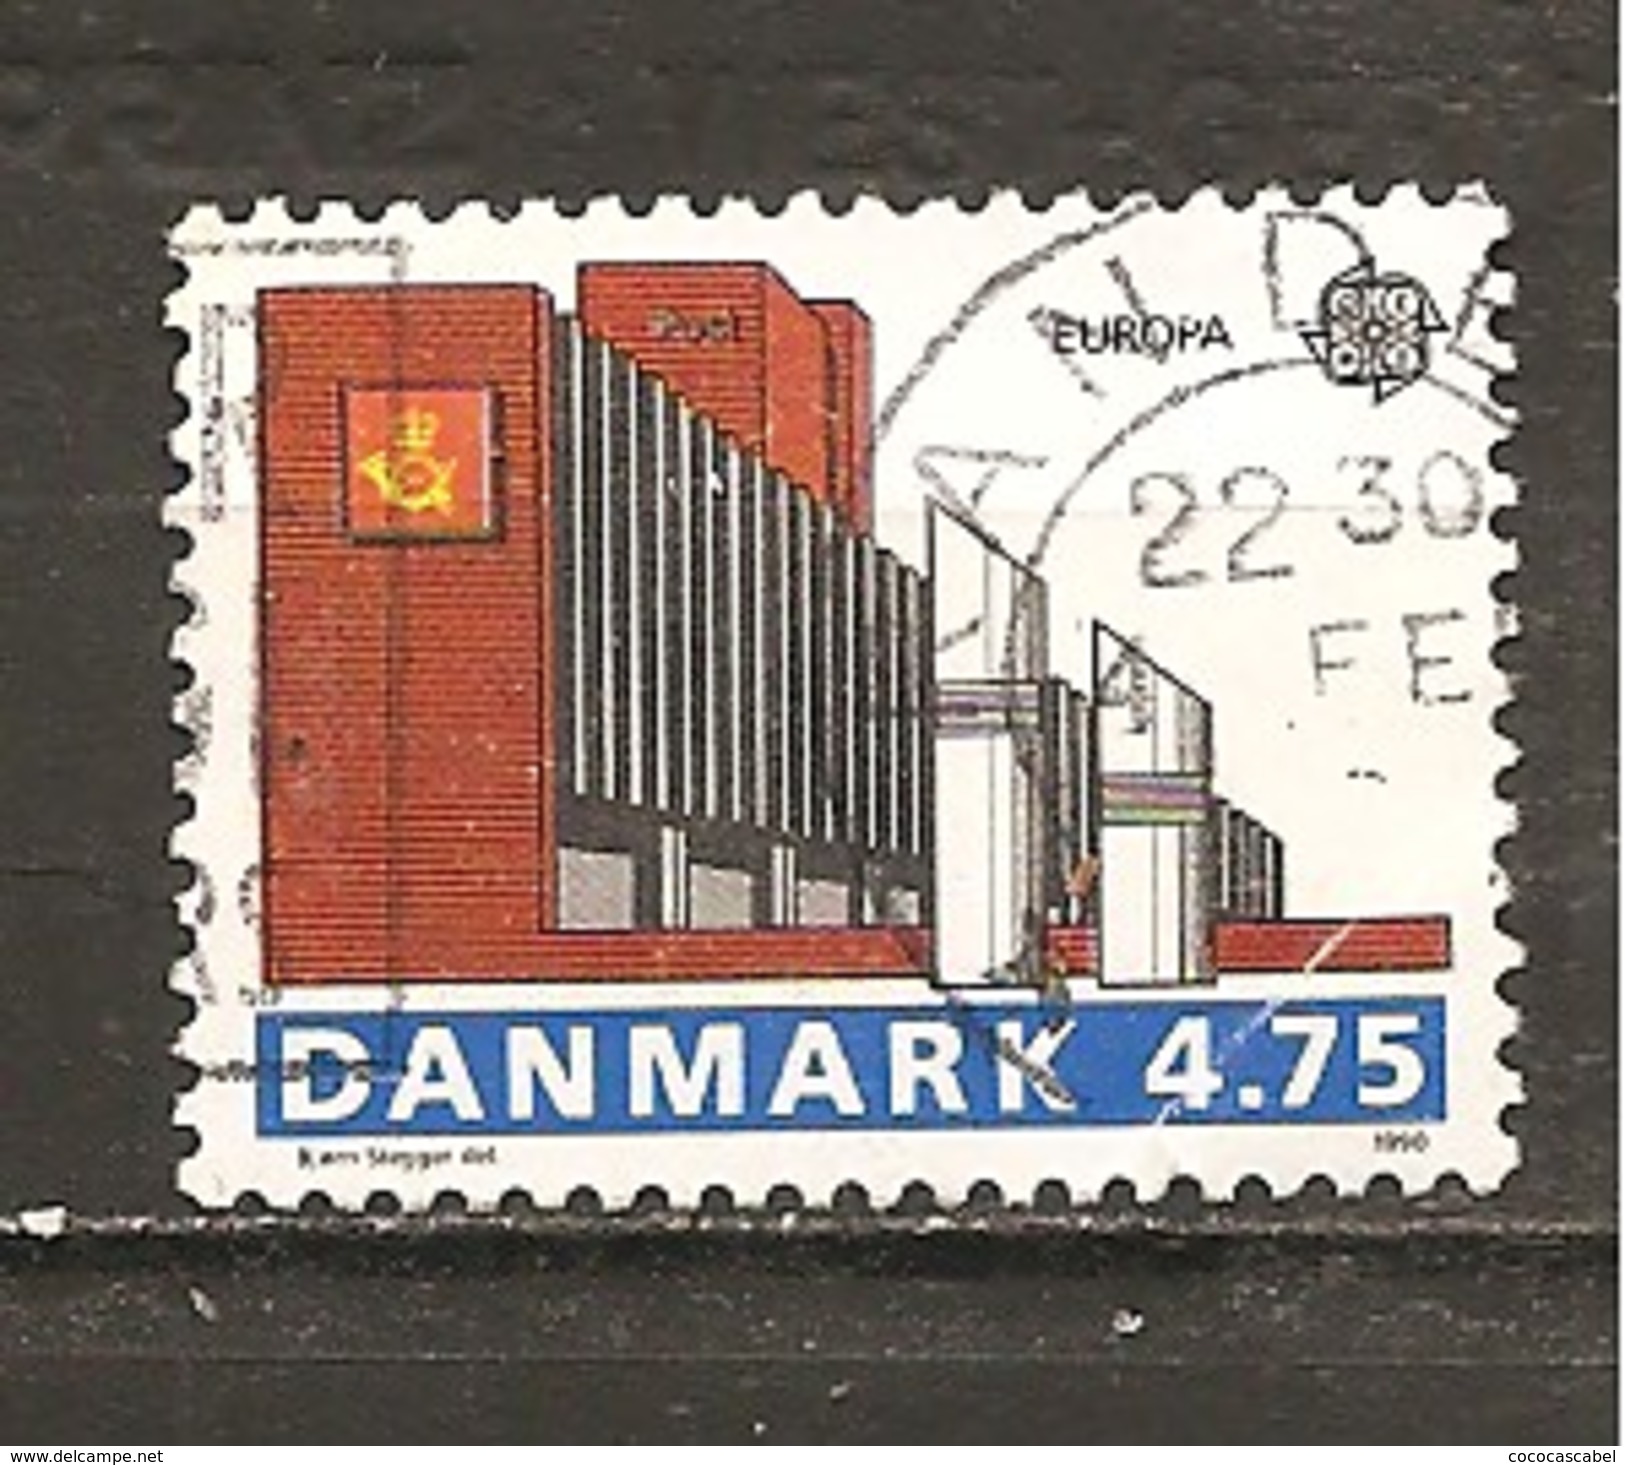 Dinamarca-Denmark Yvert Nº 979 (usado) (o) (pliegue) - Usado